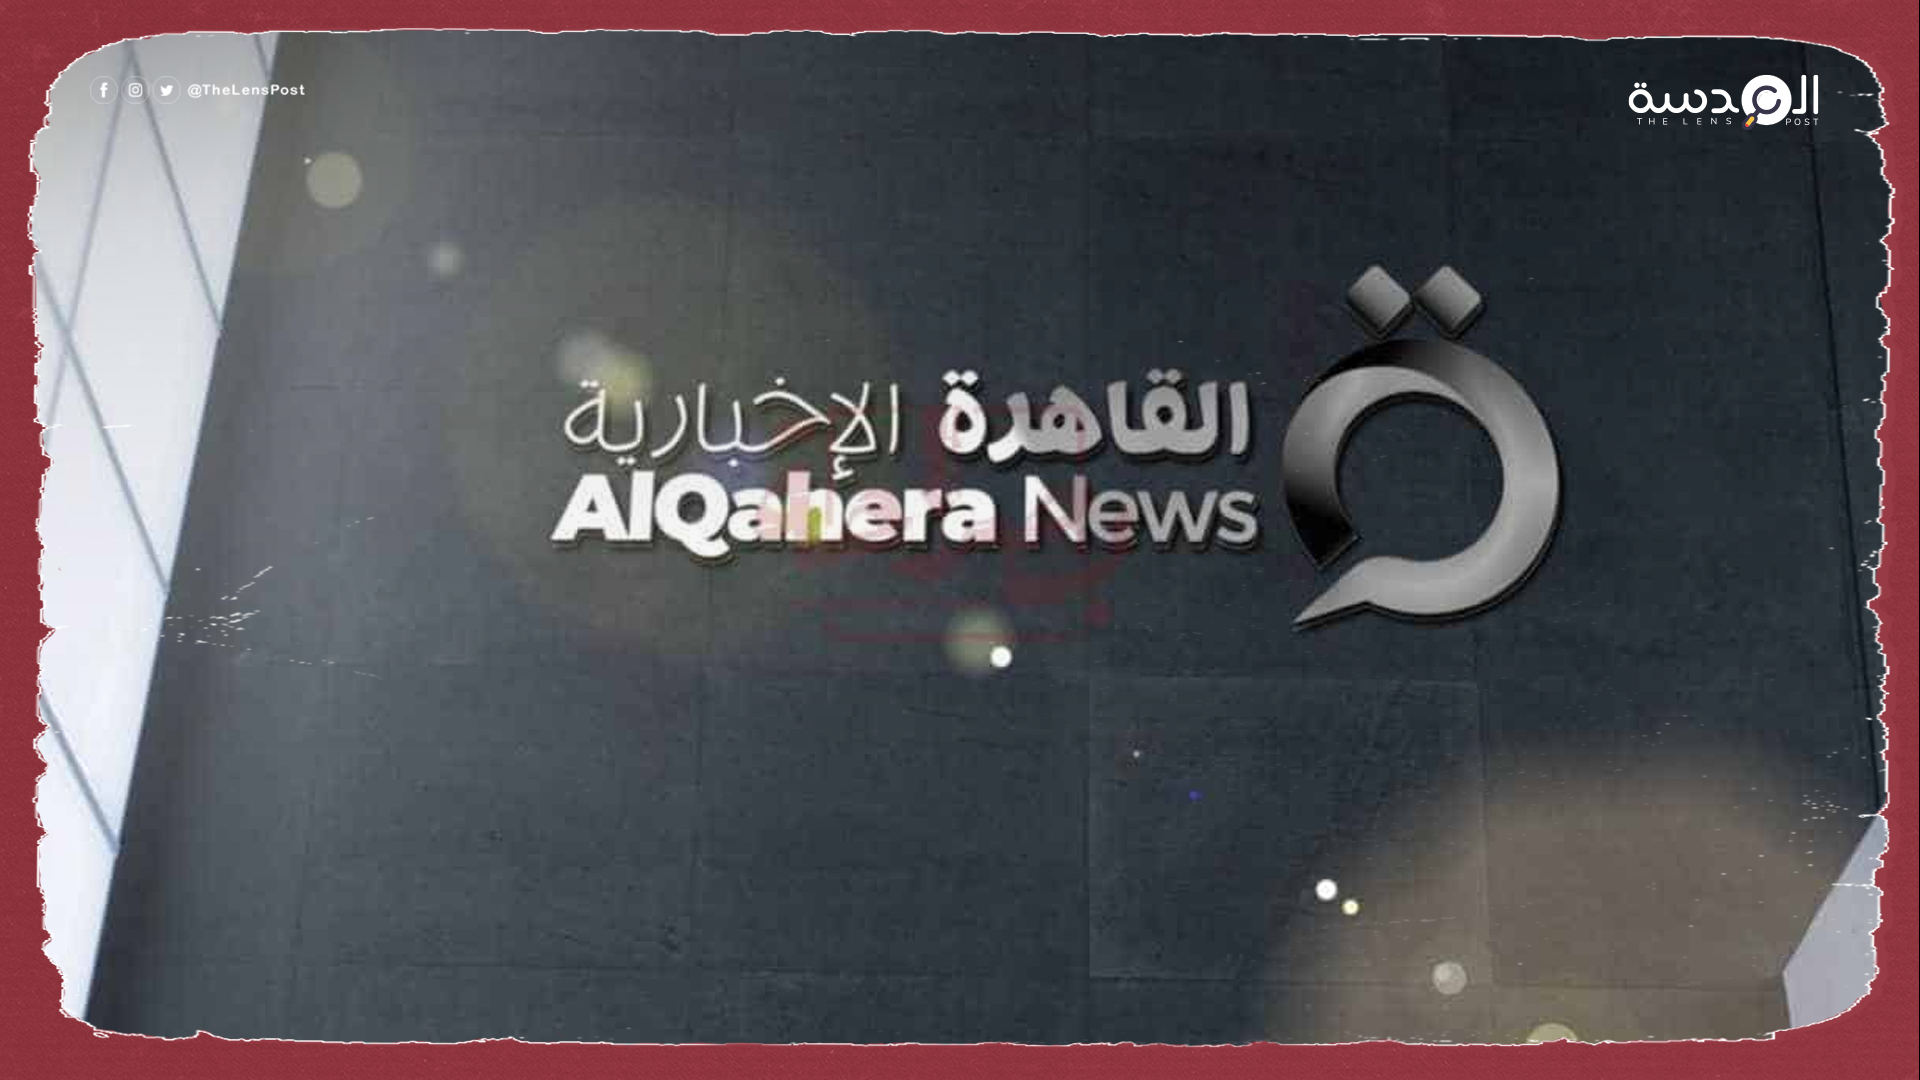 انطلاق قناة تابعة للمخابرات تحت مسمى "القاهرة الجديدة"